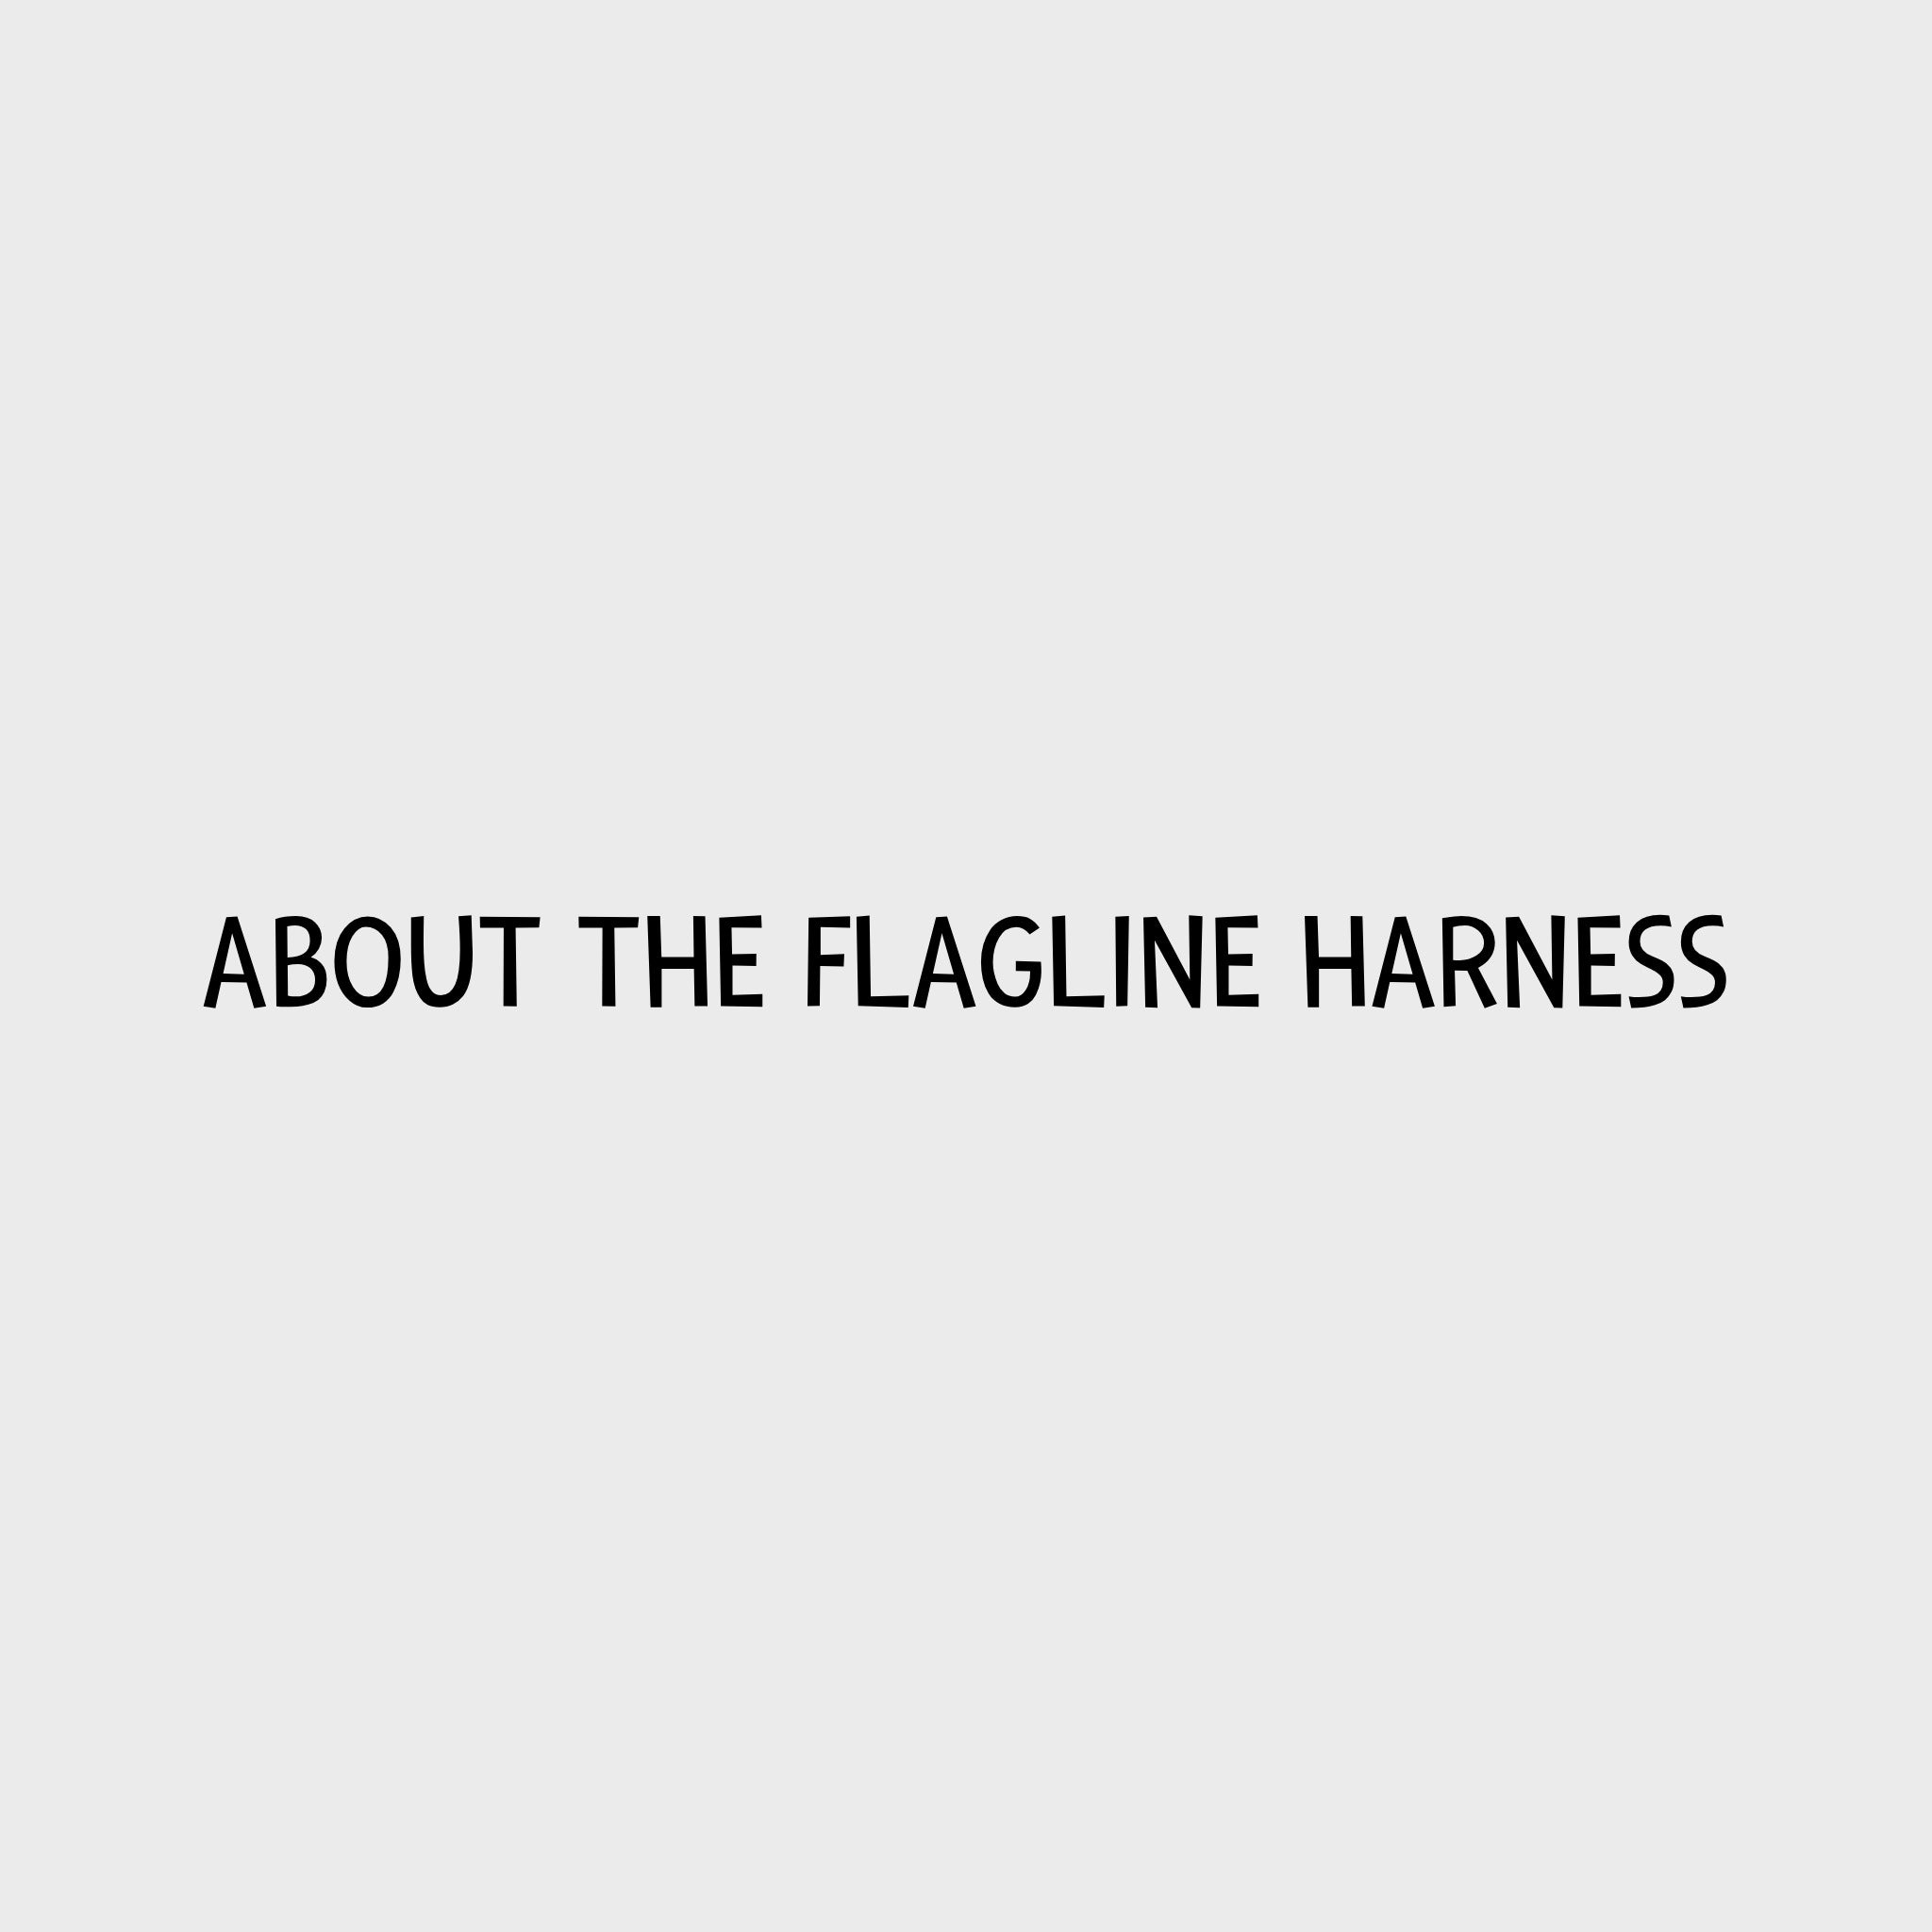 Video - Ruffwear Flagline Harness